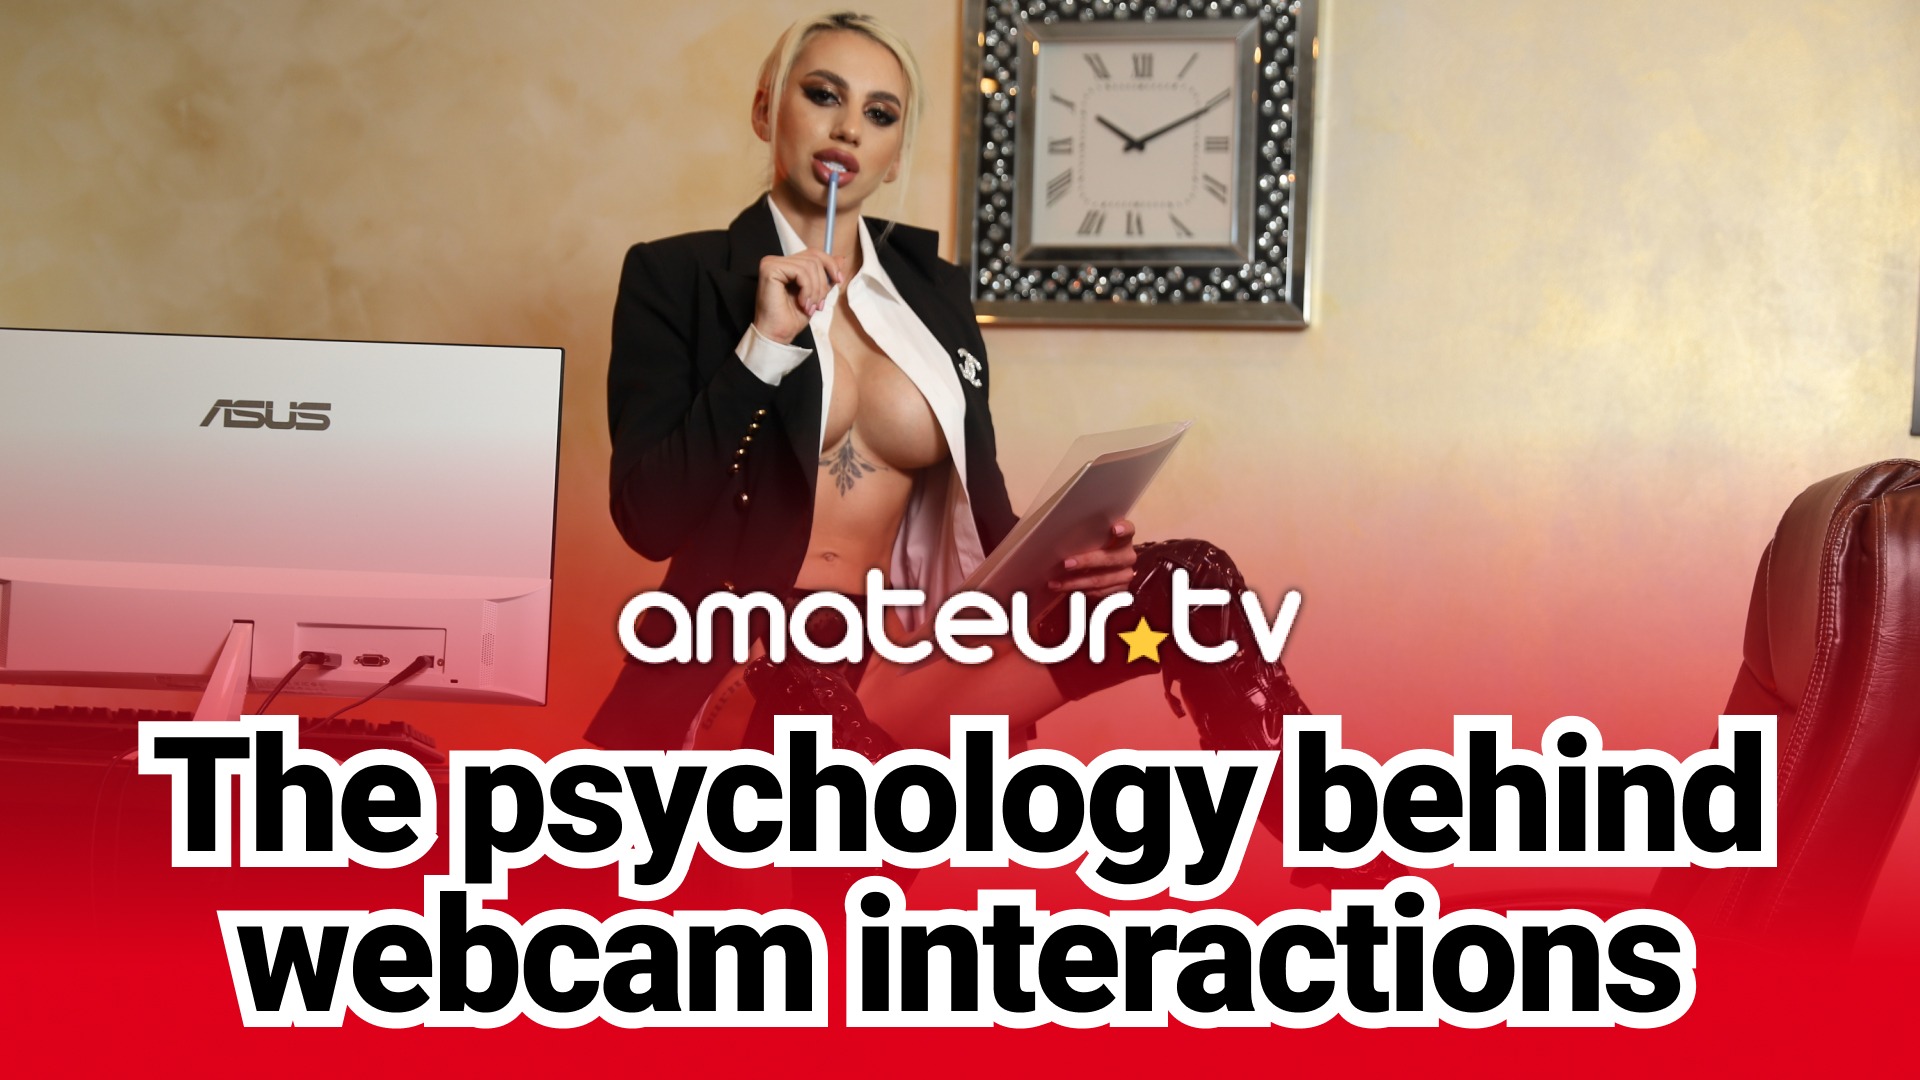 psychology behind webcam